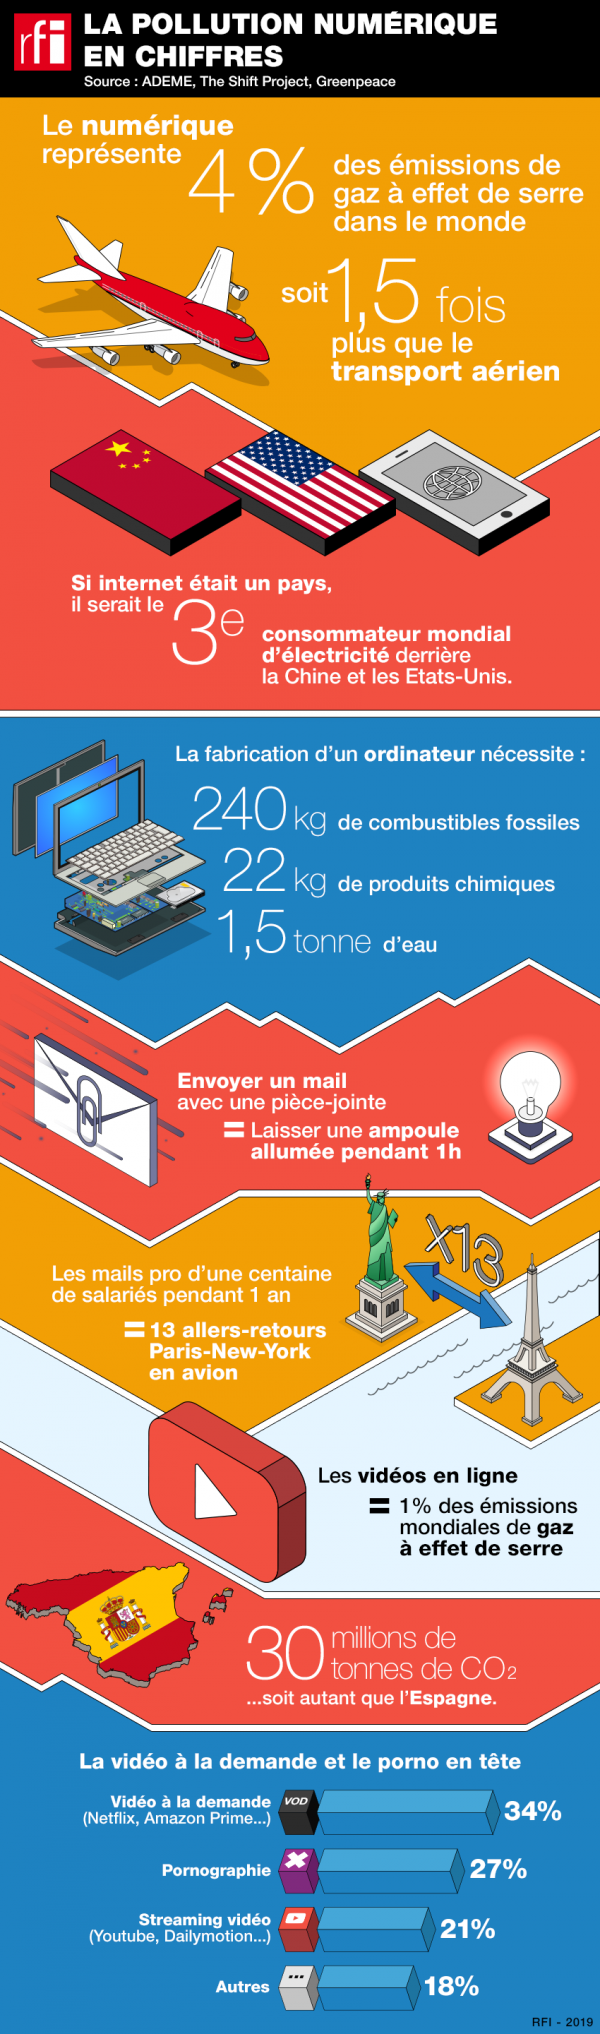 Source : "La pollution numérique, un fléau invisible", RFI, 17 août 2019, en ligne : http://www.rfi.fr/fr/science/20190813-pollution-numerique-internet-environnement-infographie